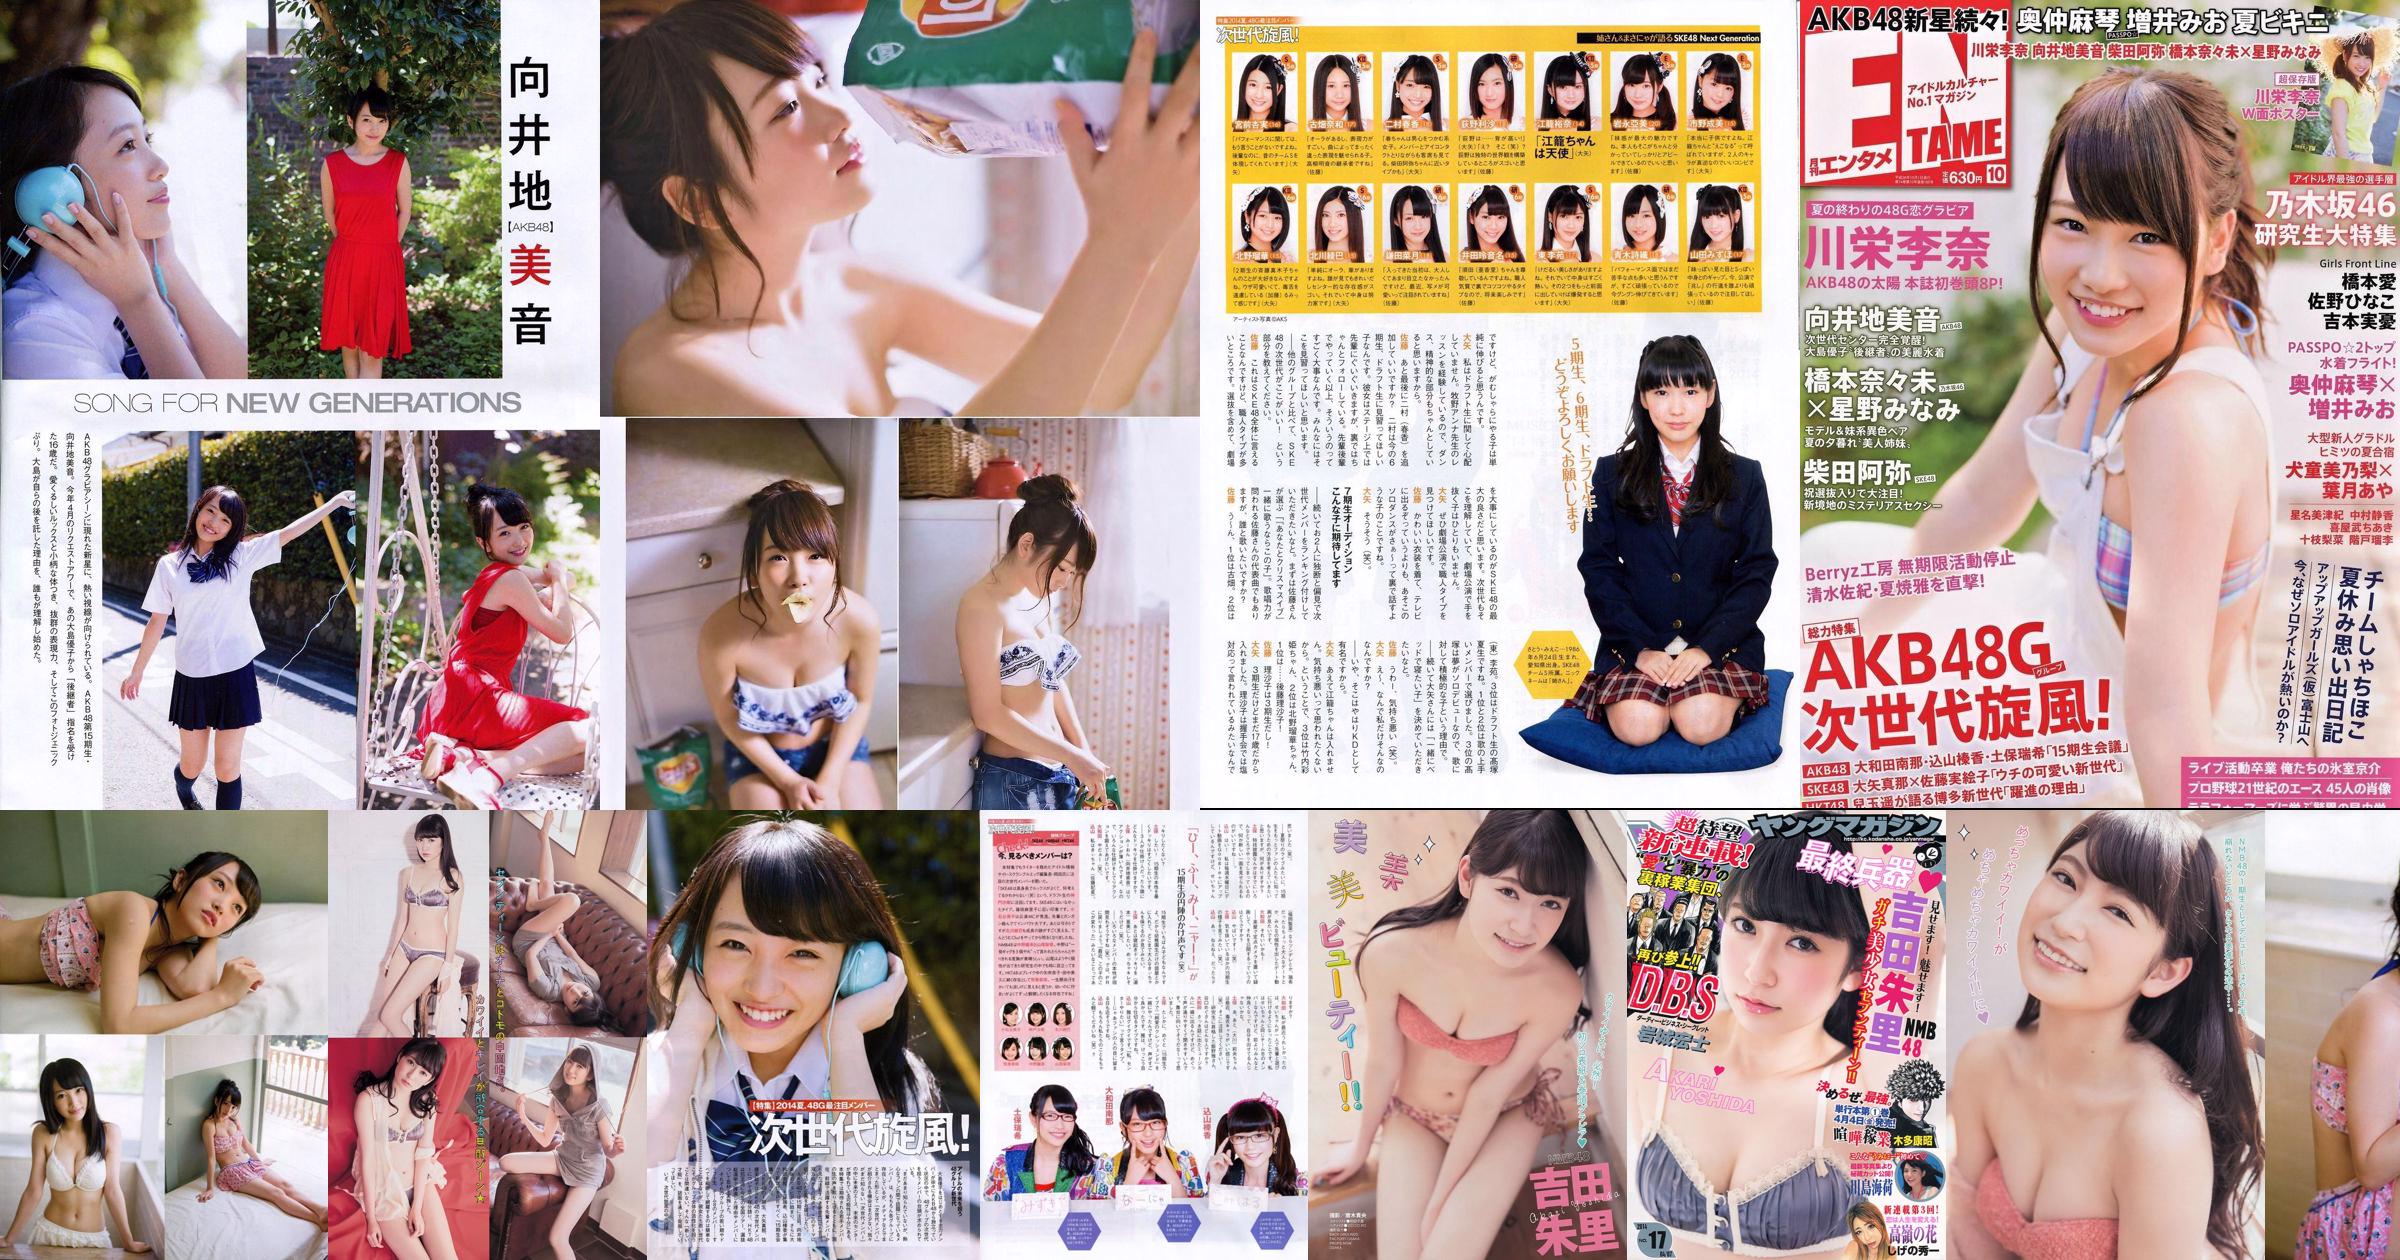 [Young Magazine] Akari Yoshida Umika Kawashima 2014 No.17 Photograph No.ab1b34 Page 6